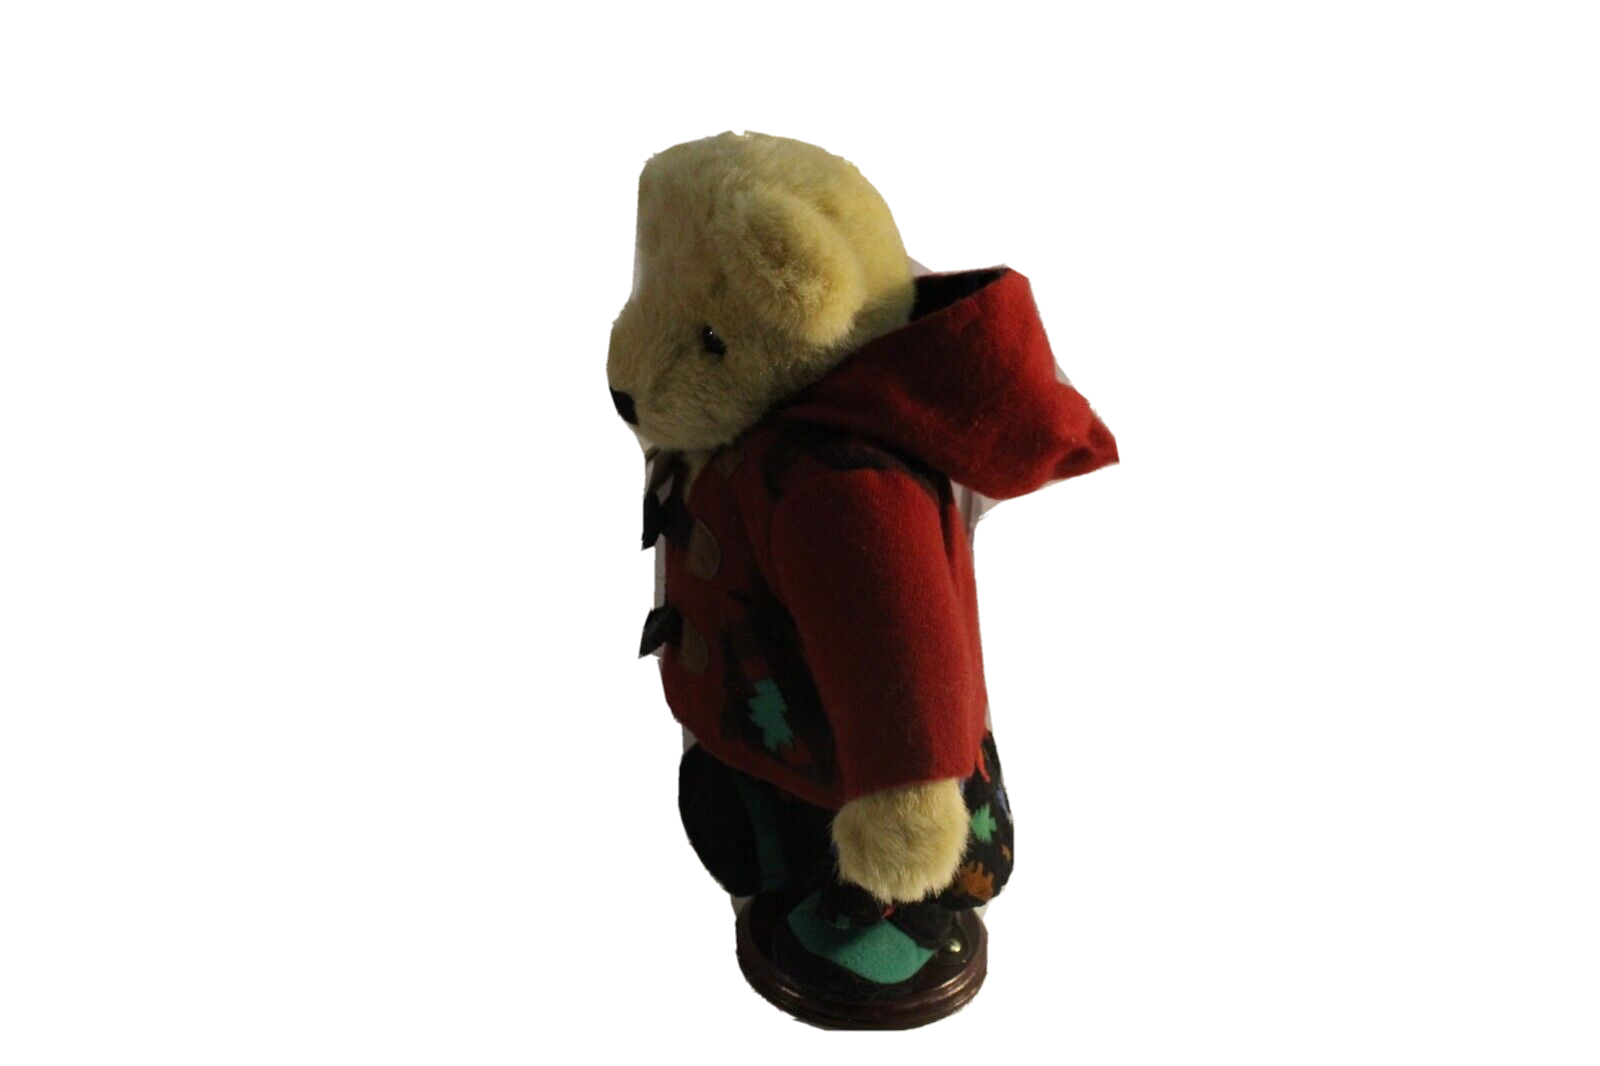 New VTG 1998 North American Bear Co Muffy Fluffy Vanderbear All Spruced Up North American Bear Company - фотография #3